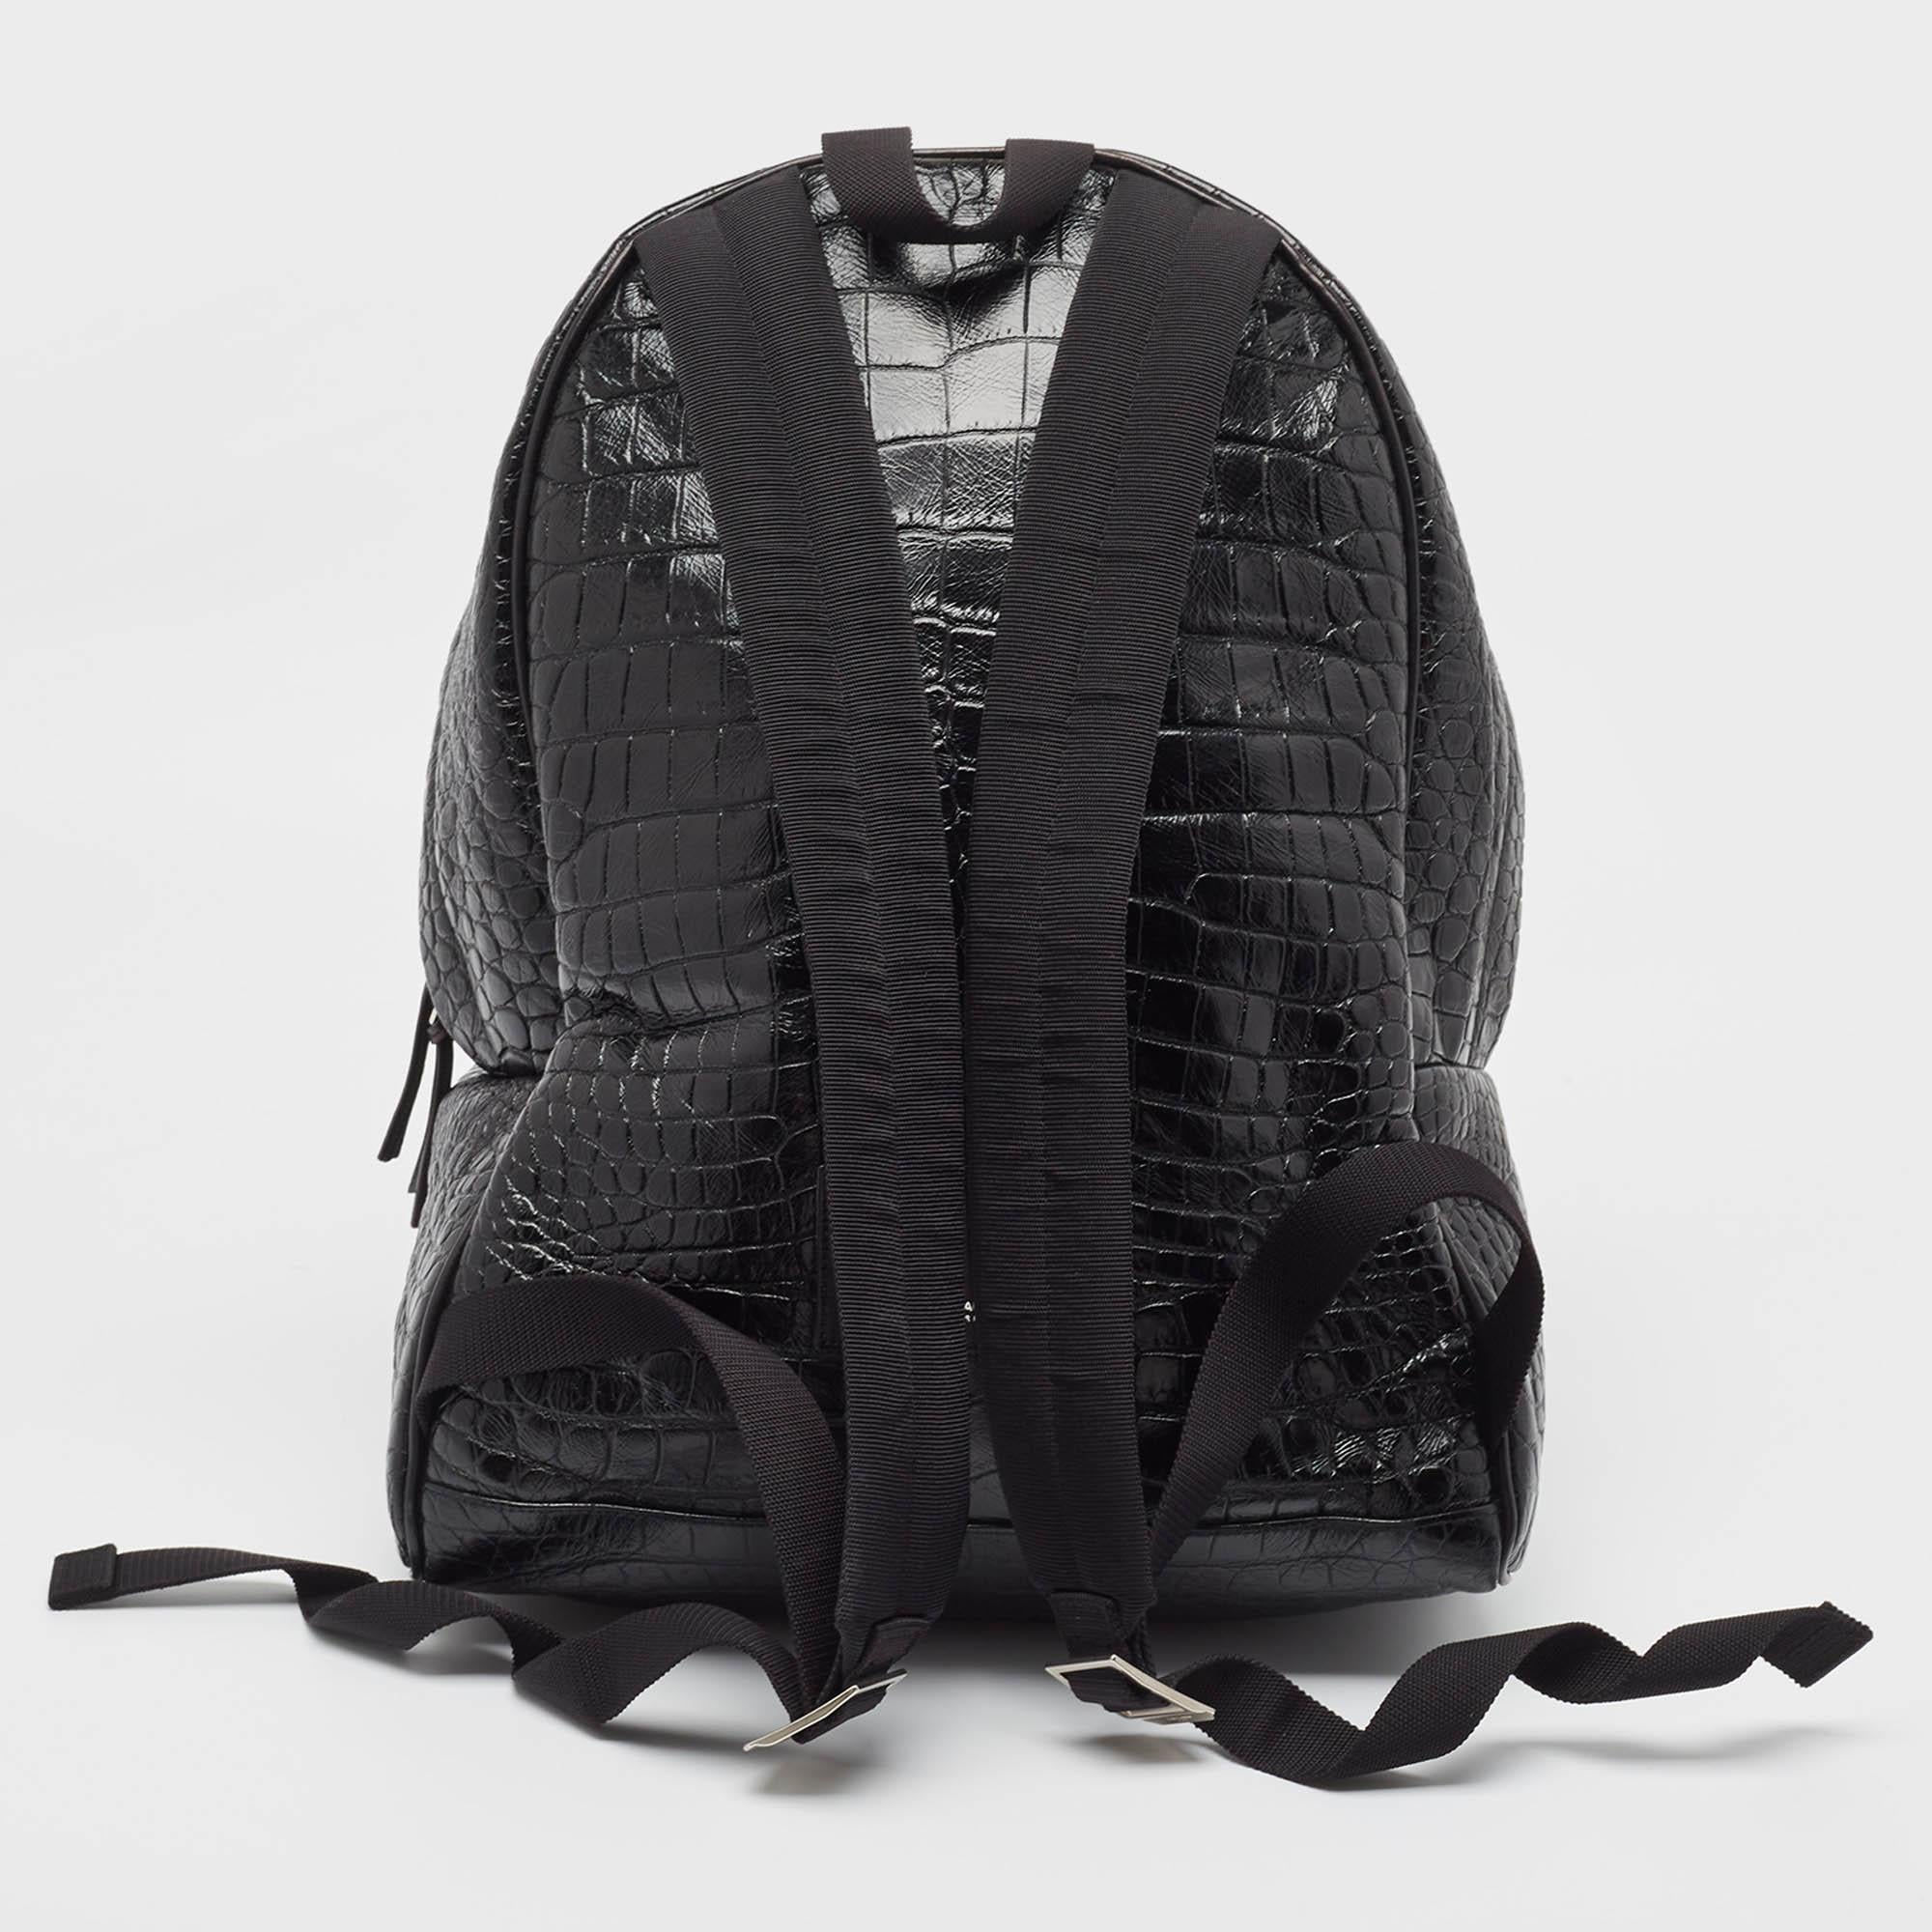 Ce sac à dos pratique et à la mode sera utile pour un usage quotidien ou pour affirmer son style. Il est intelligemment conçu avec un intérieur spacieux pour vos effets personnels. Avec ses deux bretelles, il est prêt à être à vous.

